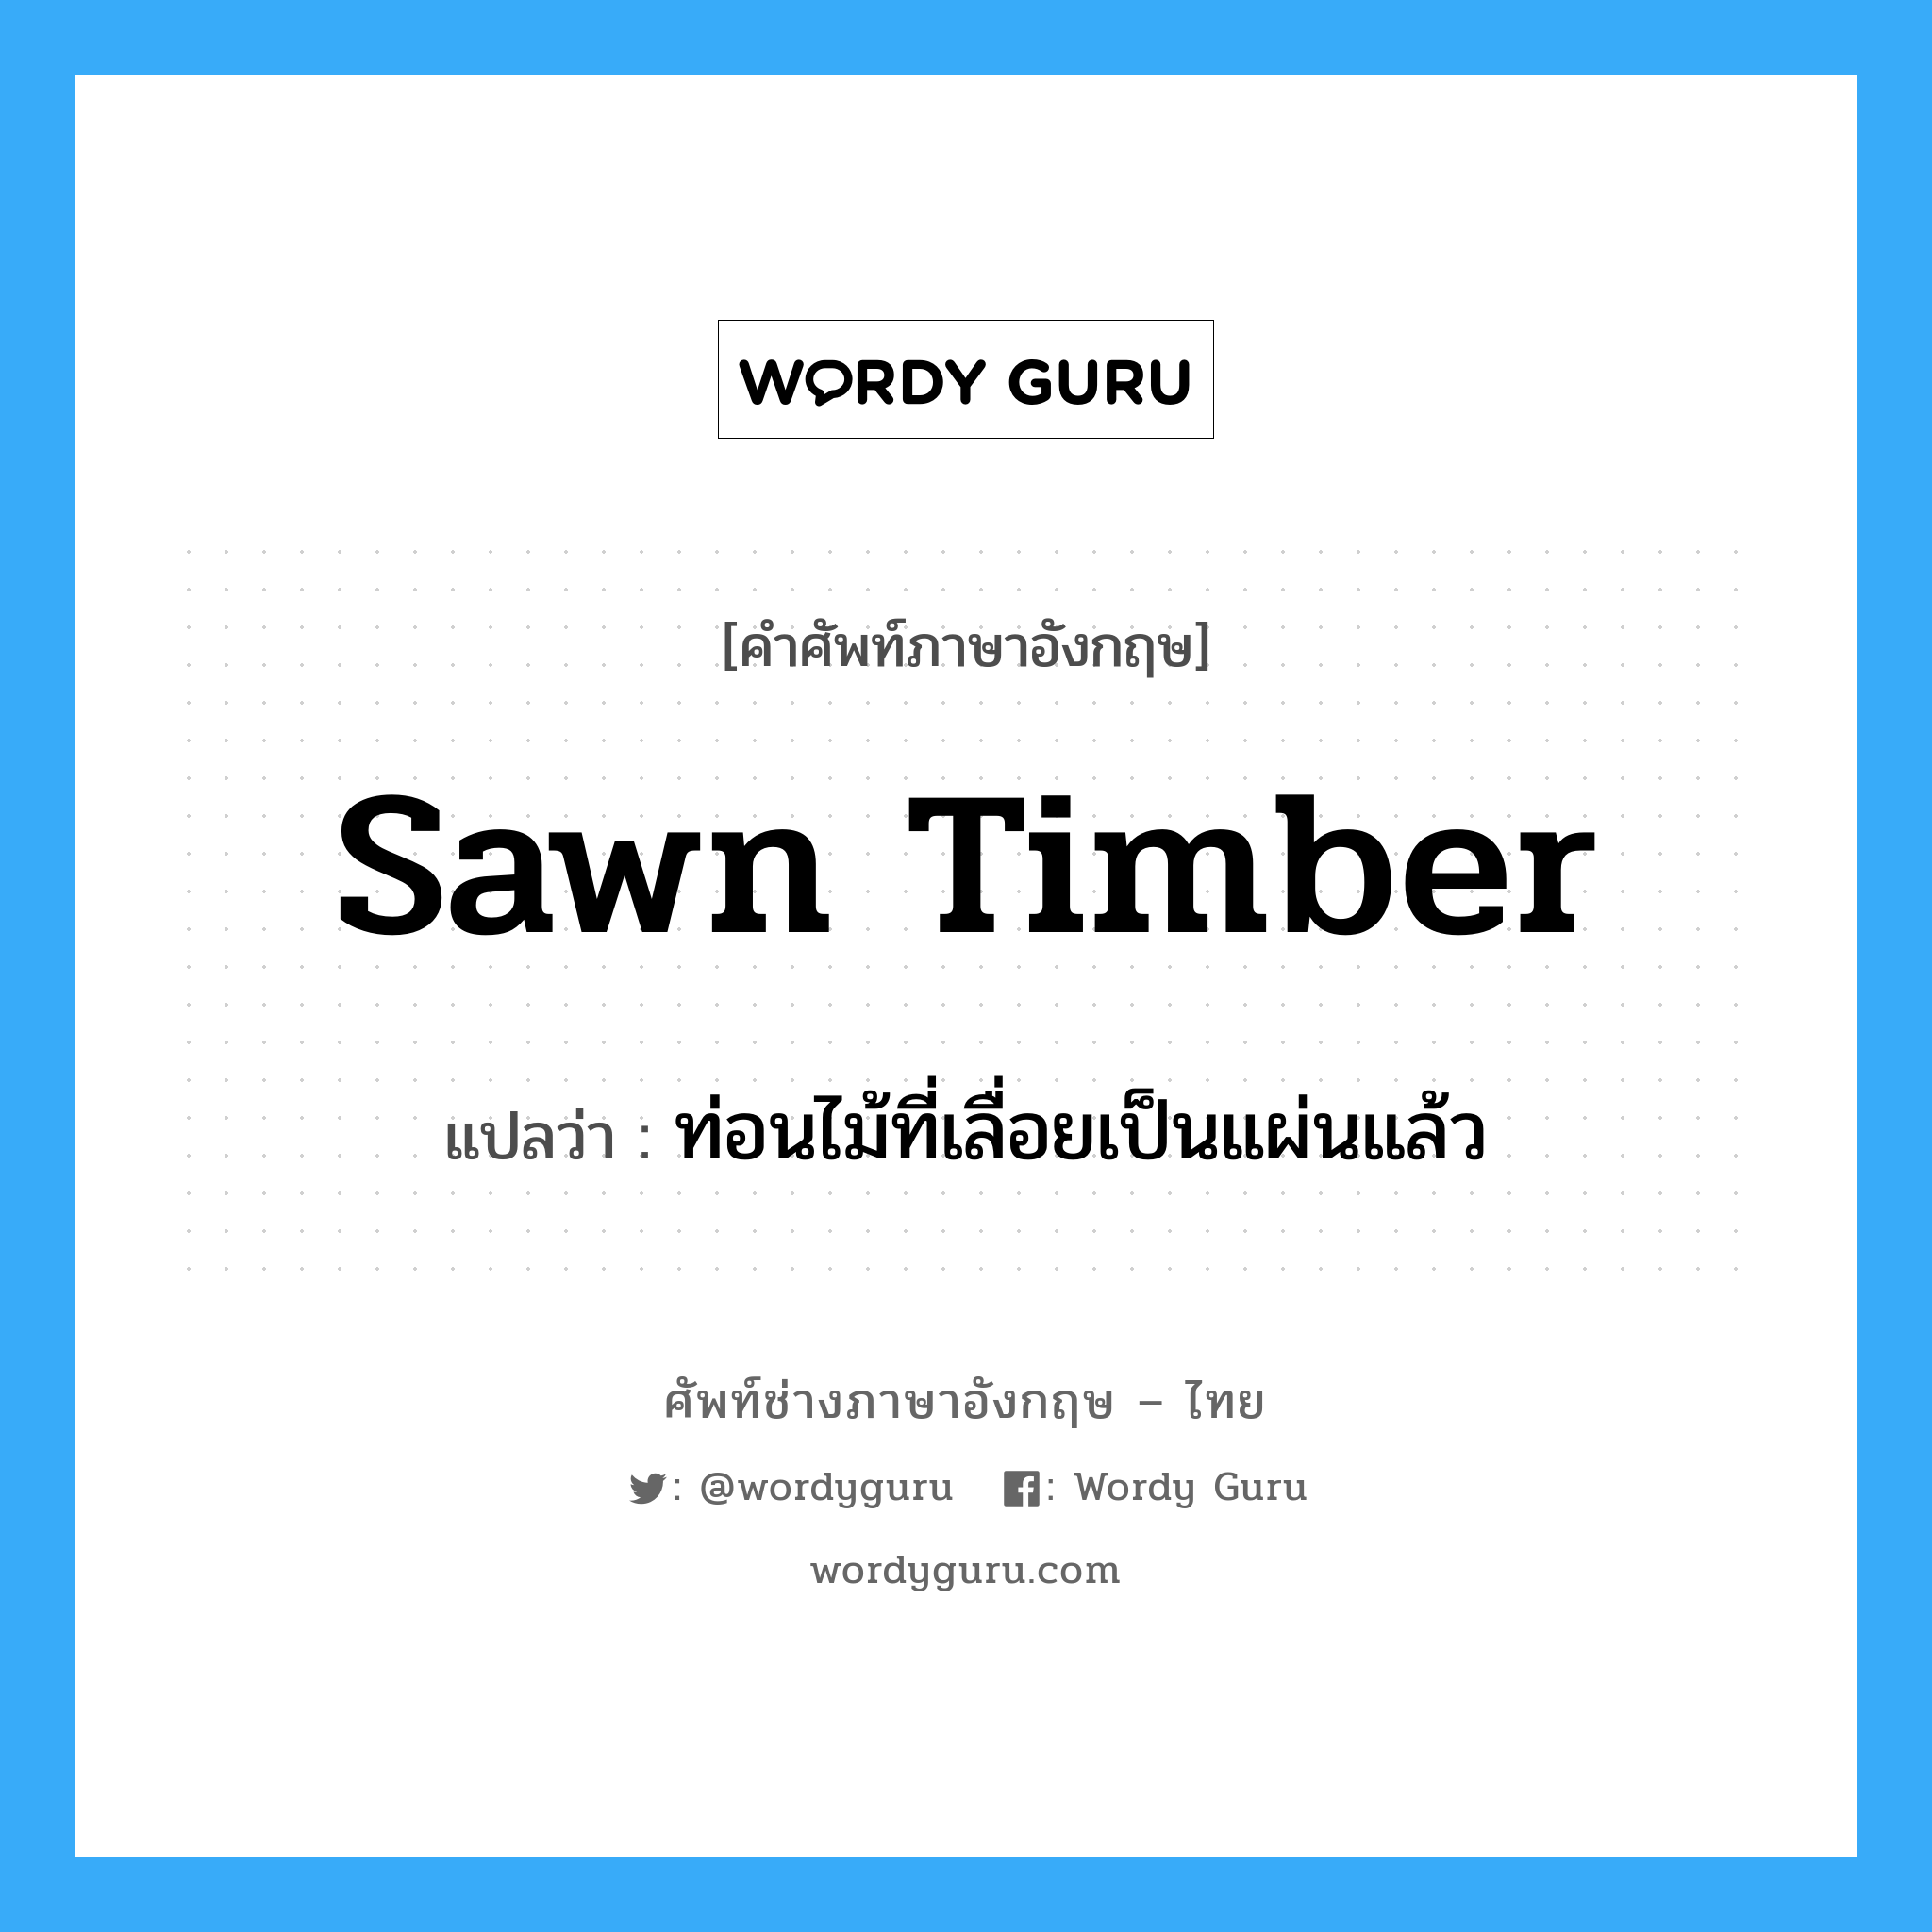 sawn timber แปลว่า?, คำศัพท์ช่างภาษาอังกฤษ - ไทย sawn timber คำศัพท์ภาษาอังกฤษ sawn timber แปลว่า ท่อนไม้ที่เลื่อยเป็นแผ่นแล้ว